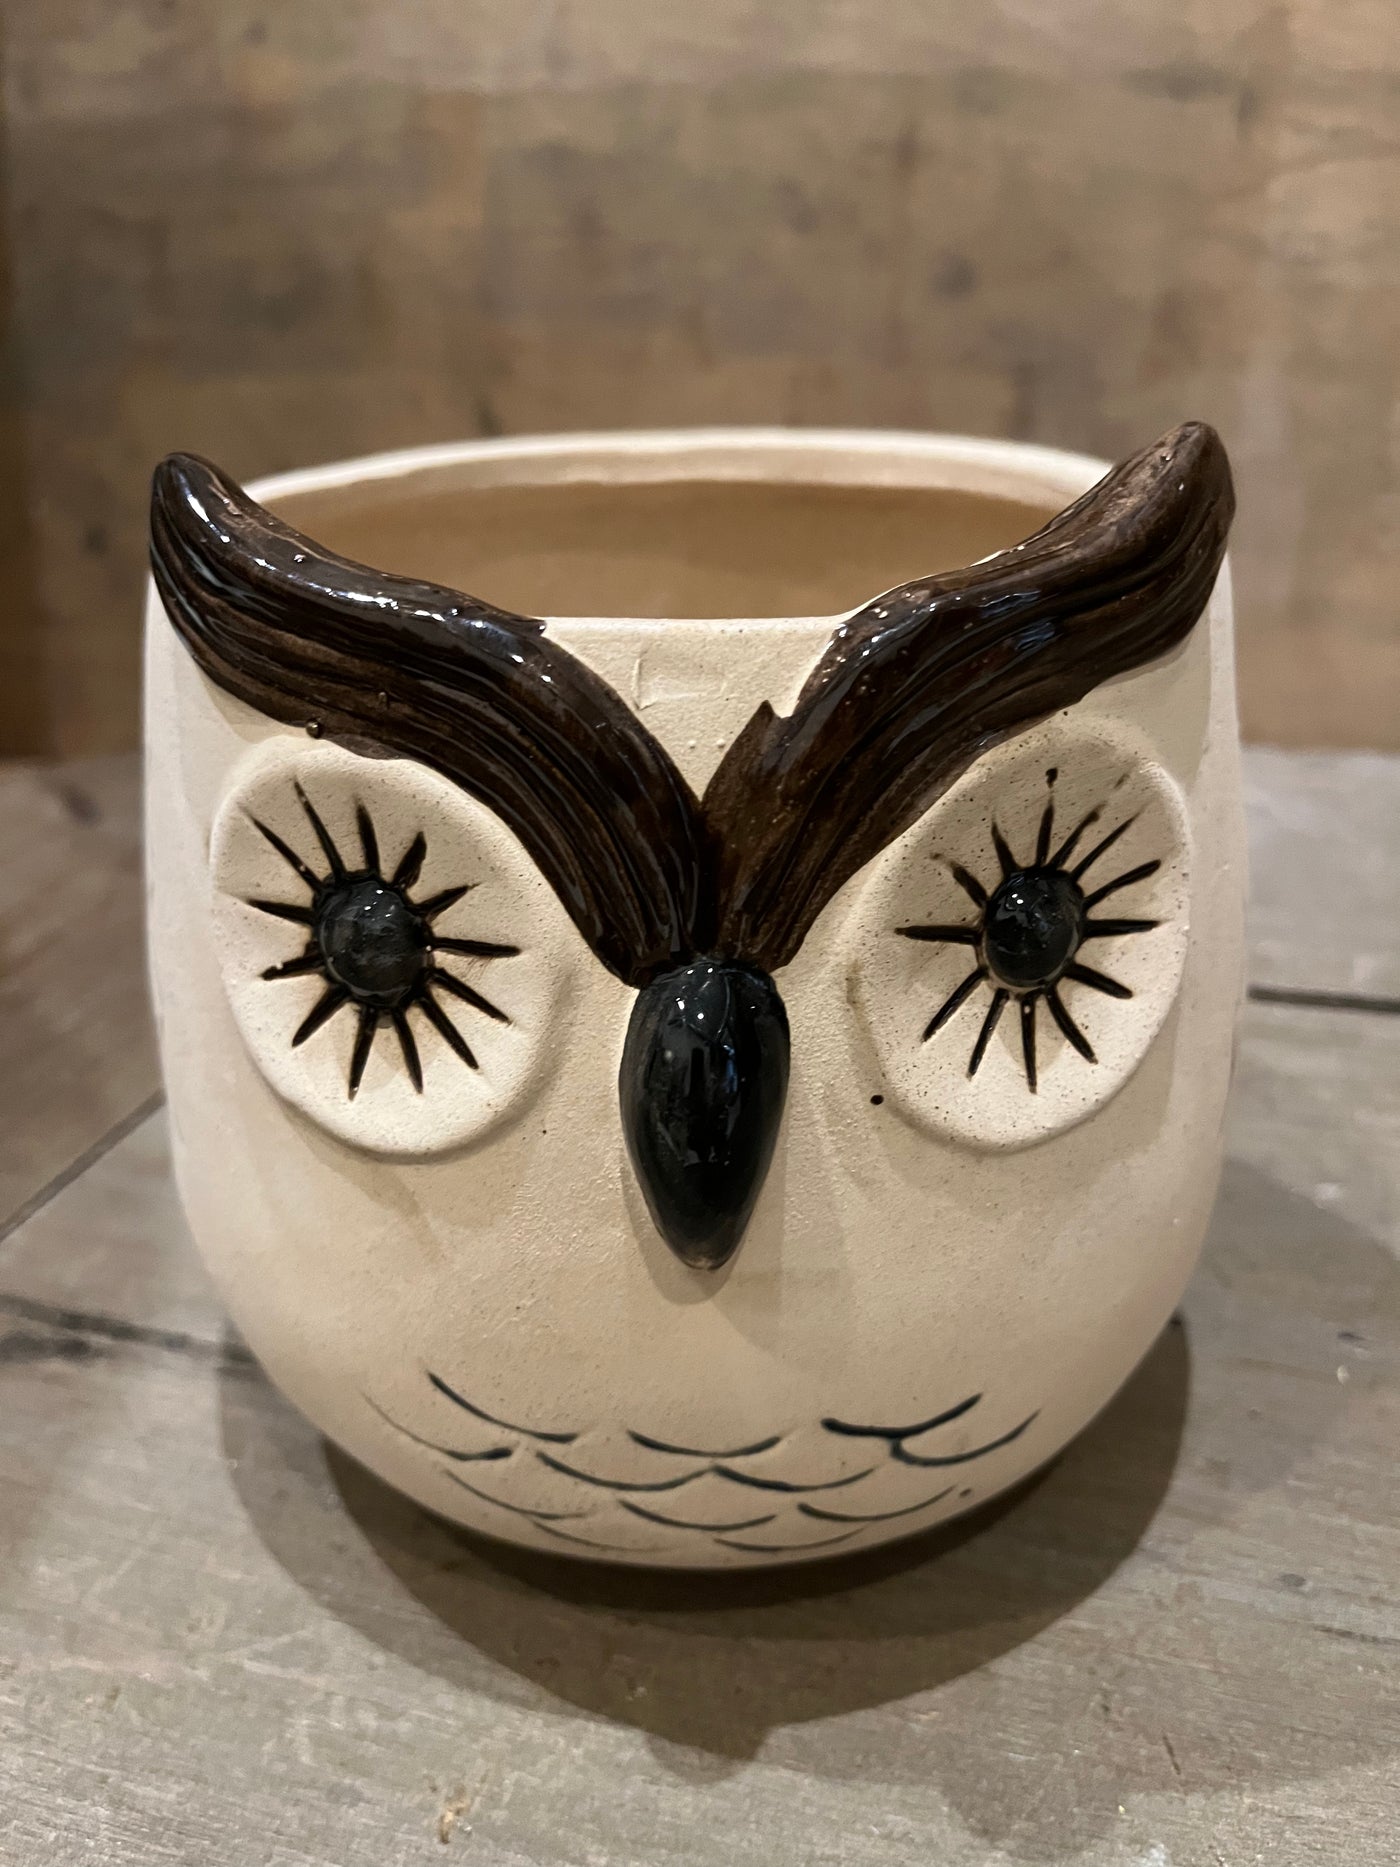 Kitschy Owl Planter